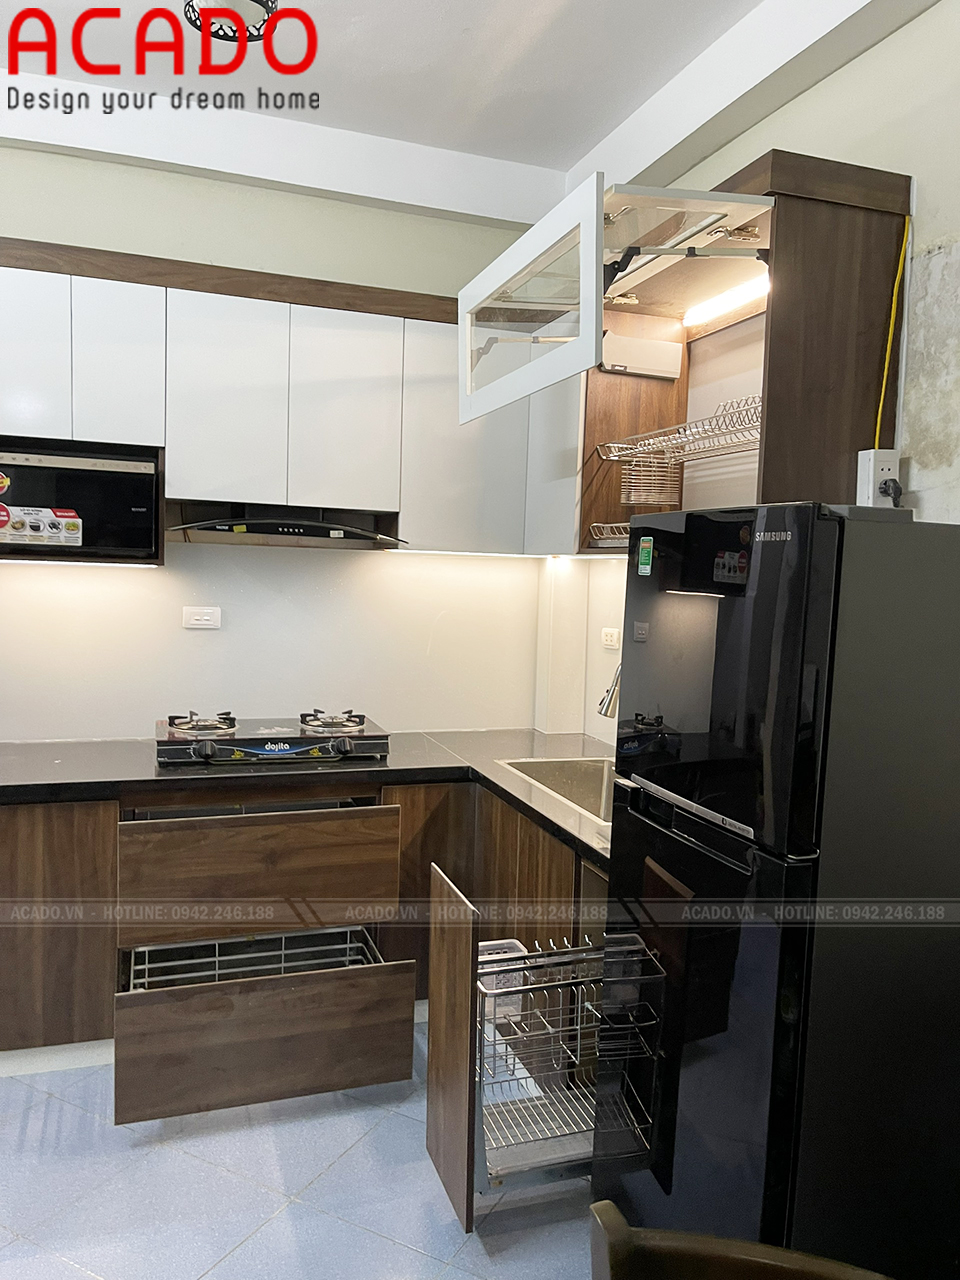 Tủ bếp sử dụng hệ thống đen led tăng tính thẩm mĩ cho không gian bếp